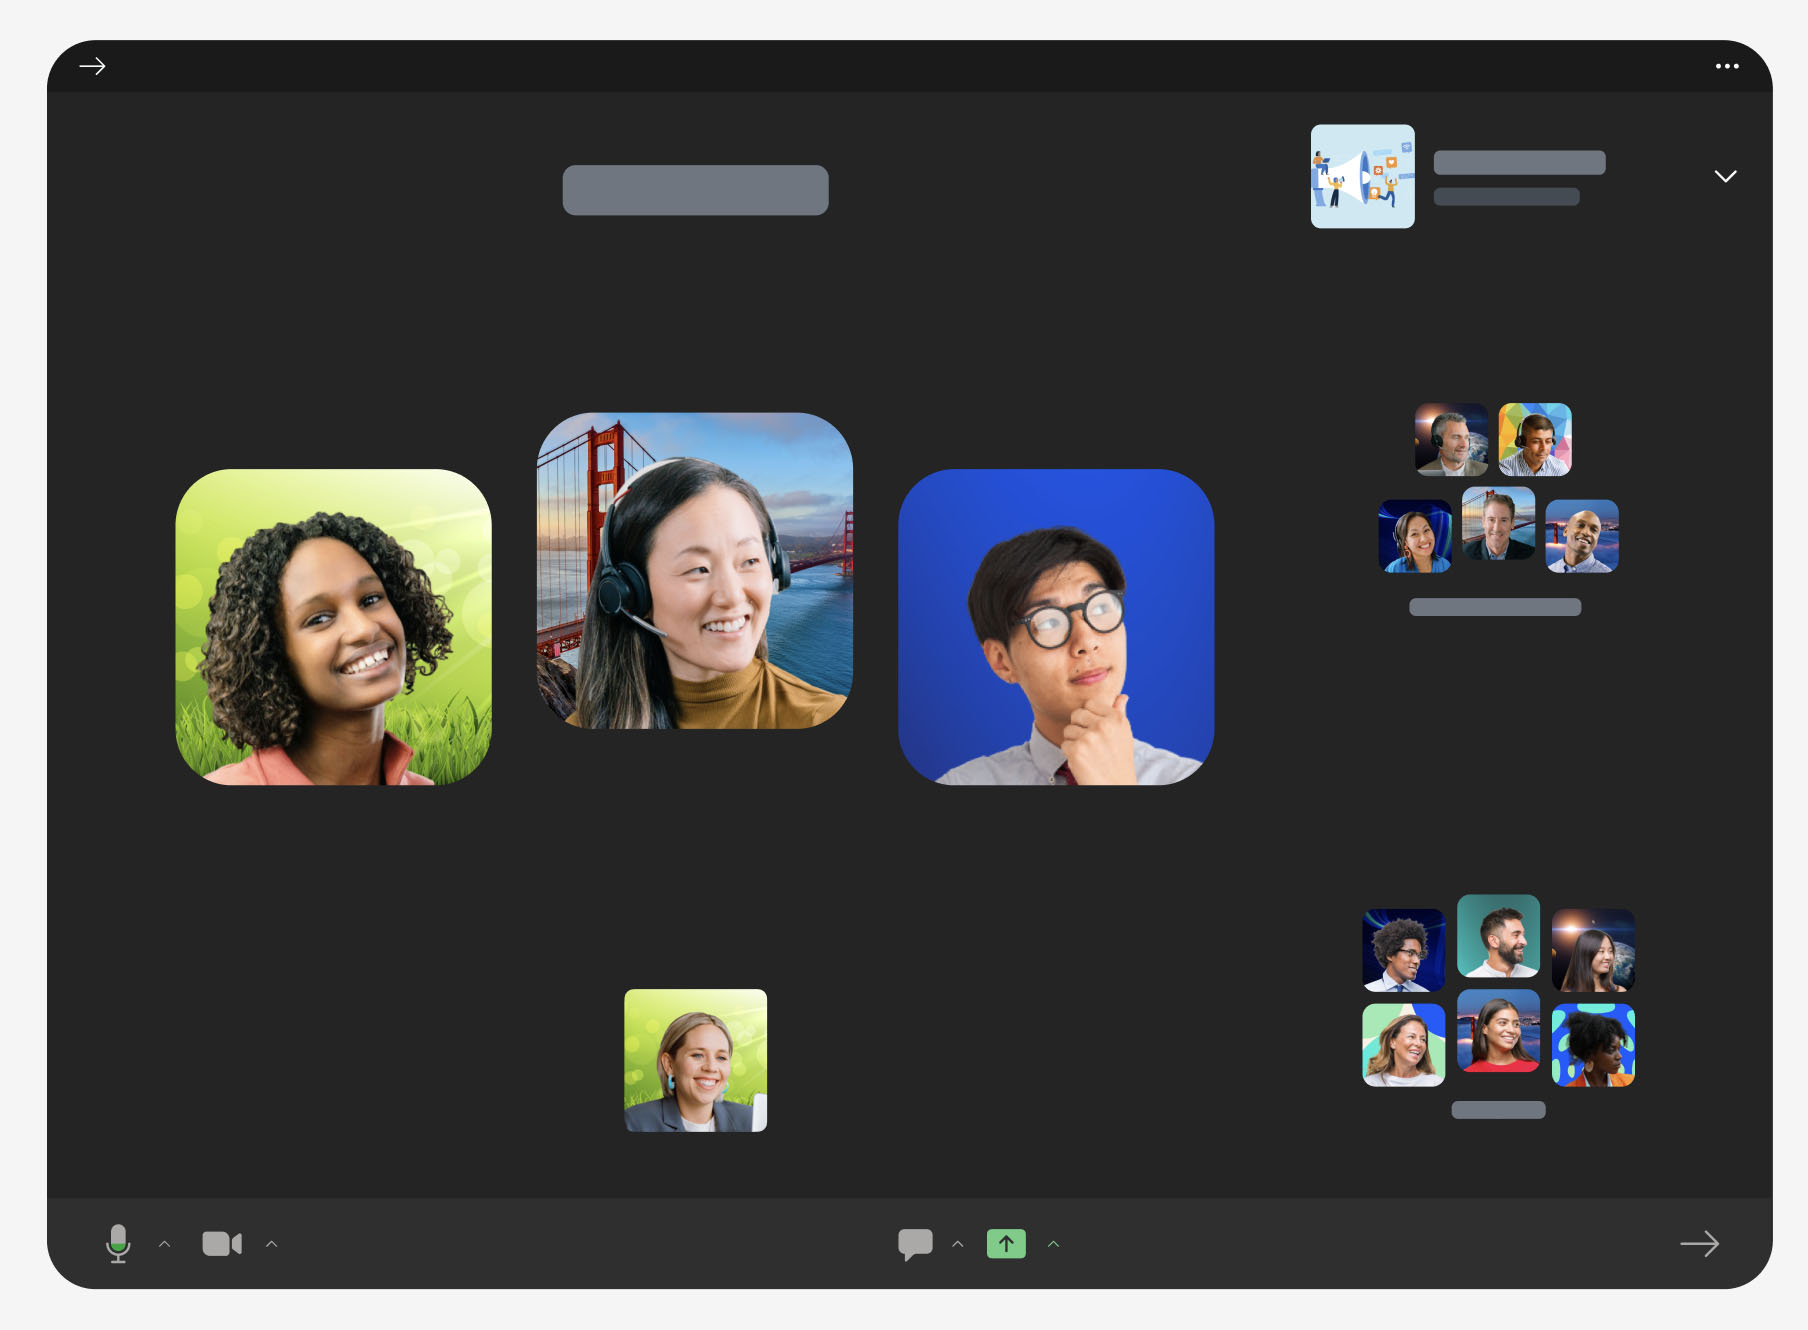 这是一张视频会议软件界面截图，显示了五位参与者的头像，背景是虚拟的，包括一座桥和其他图案。